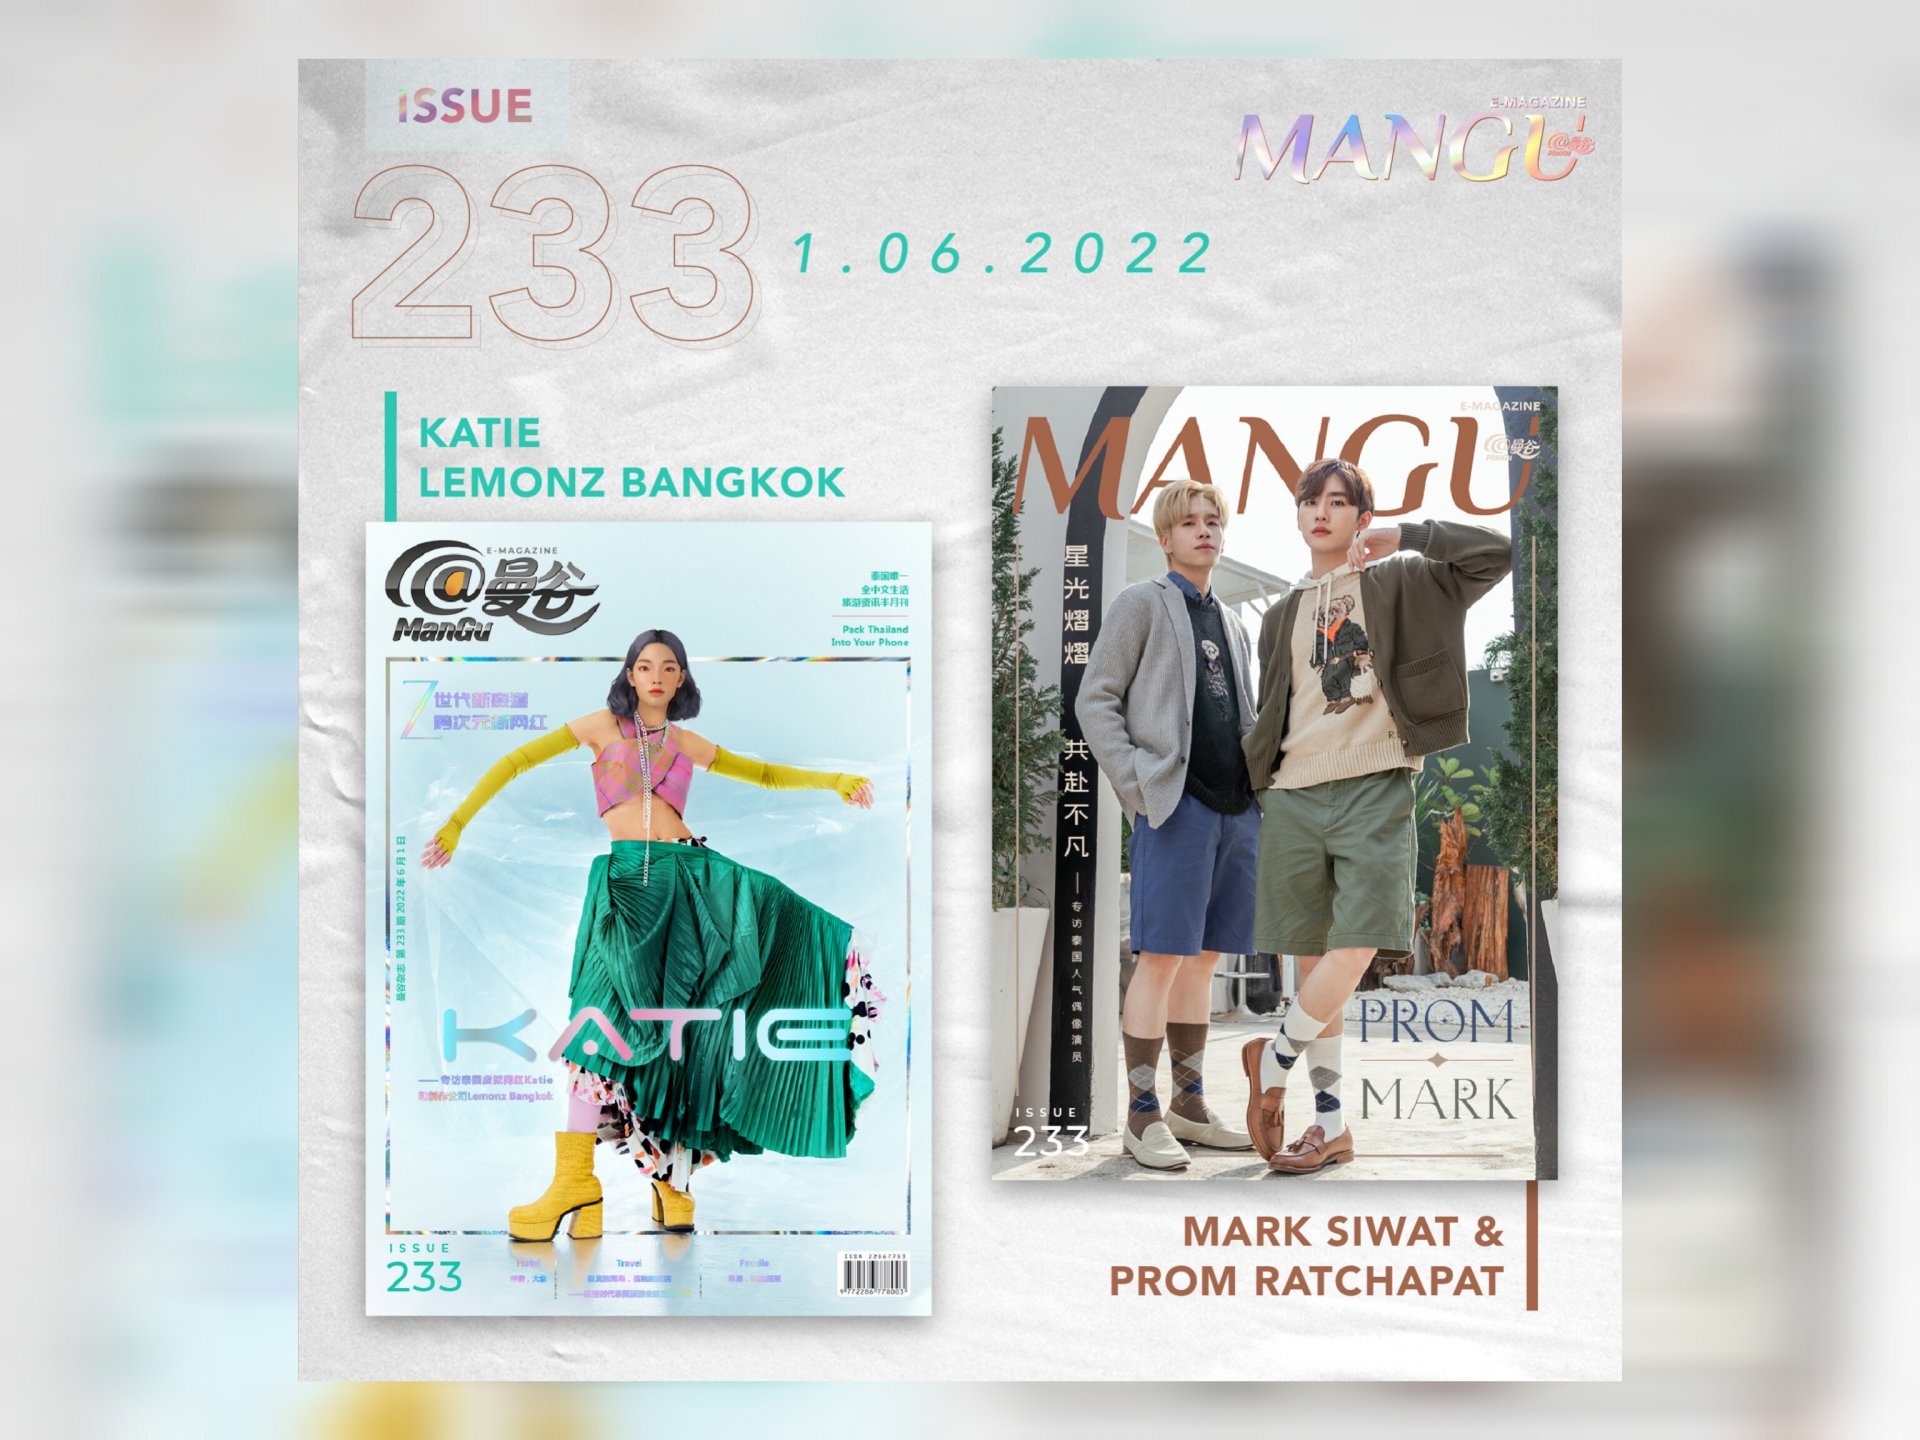 น้องกะทิ Virtual Influencer ของประเทศไทย และ มาร์ค ศิวัช & พร้อม ราชภัทร ขึ้นปกนิตยสาร @ManGu Magazine